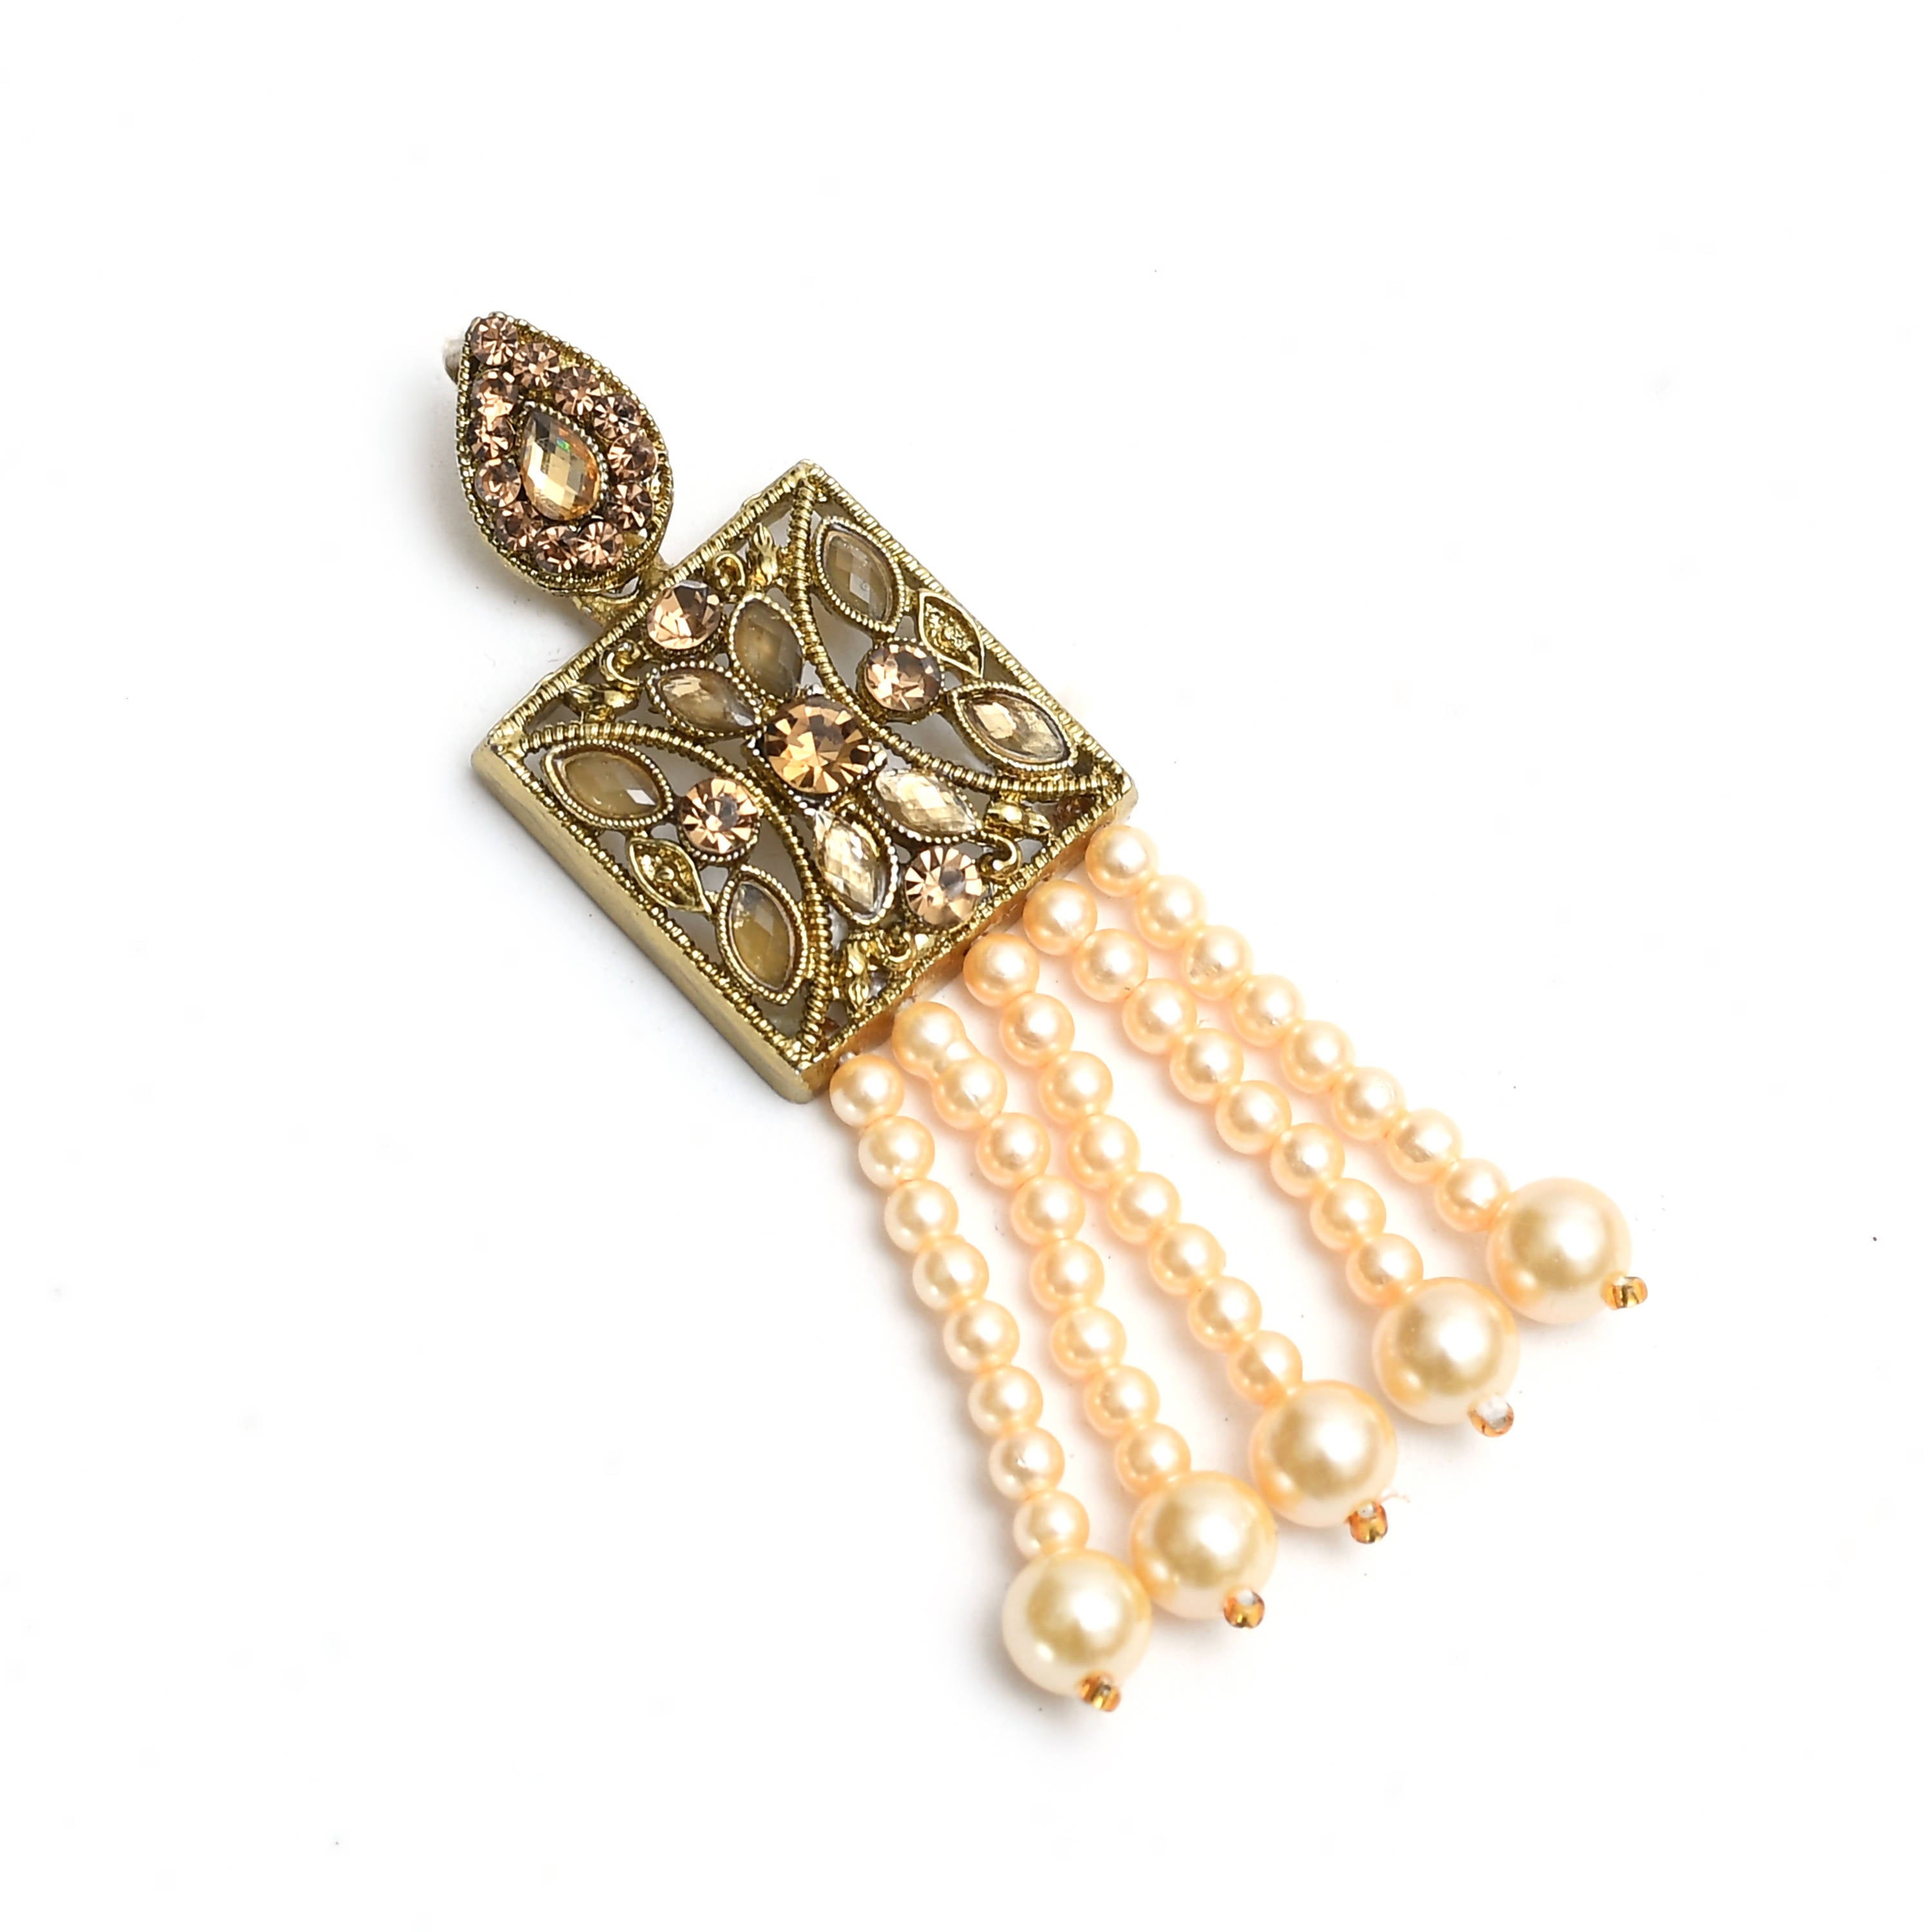 Kamal Johar Gold-Plated Pearls Necklace Set Mangalsutra Jkms_071